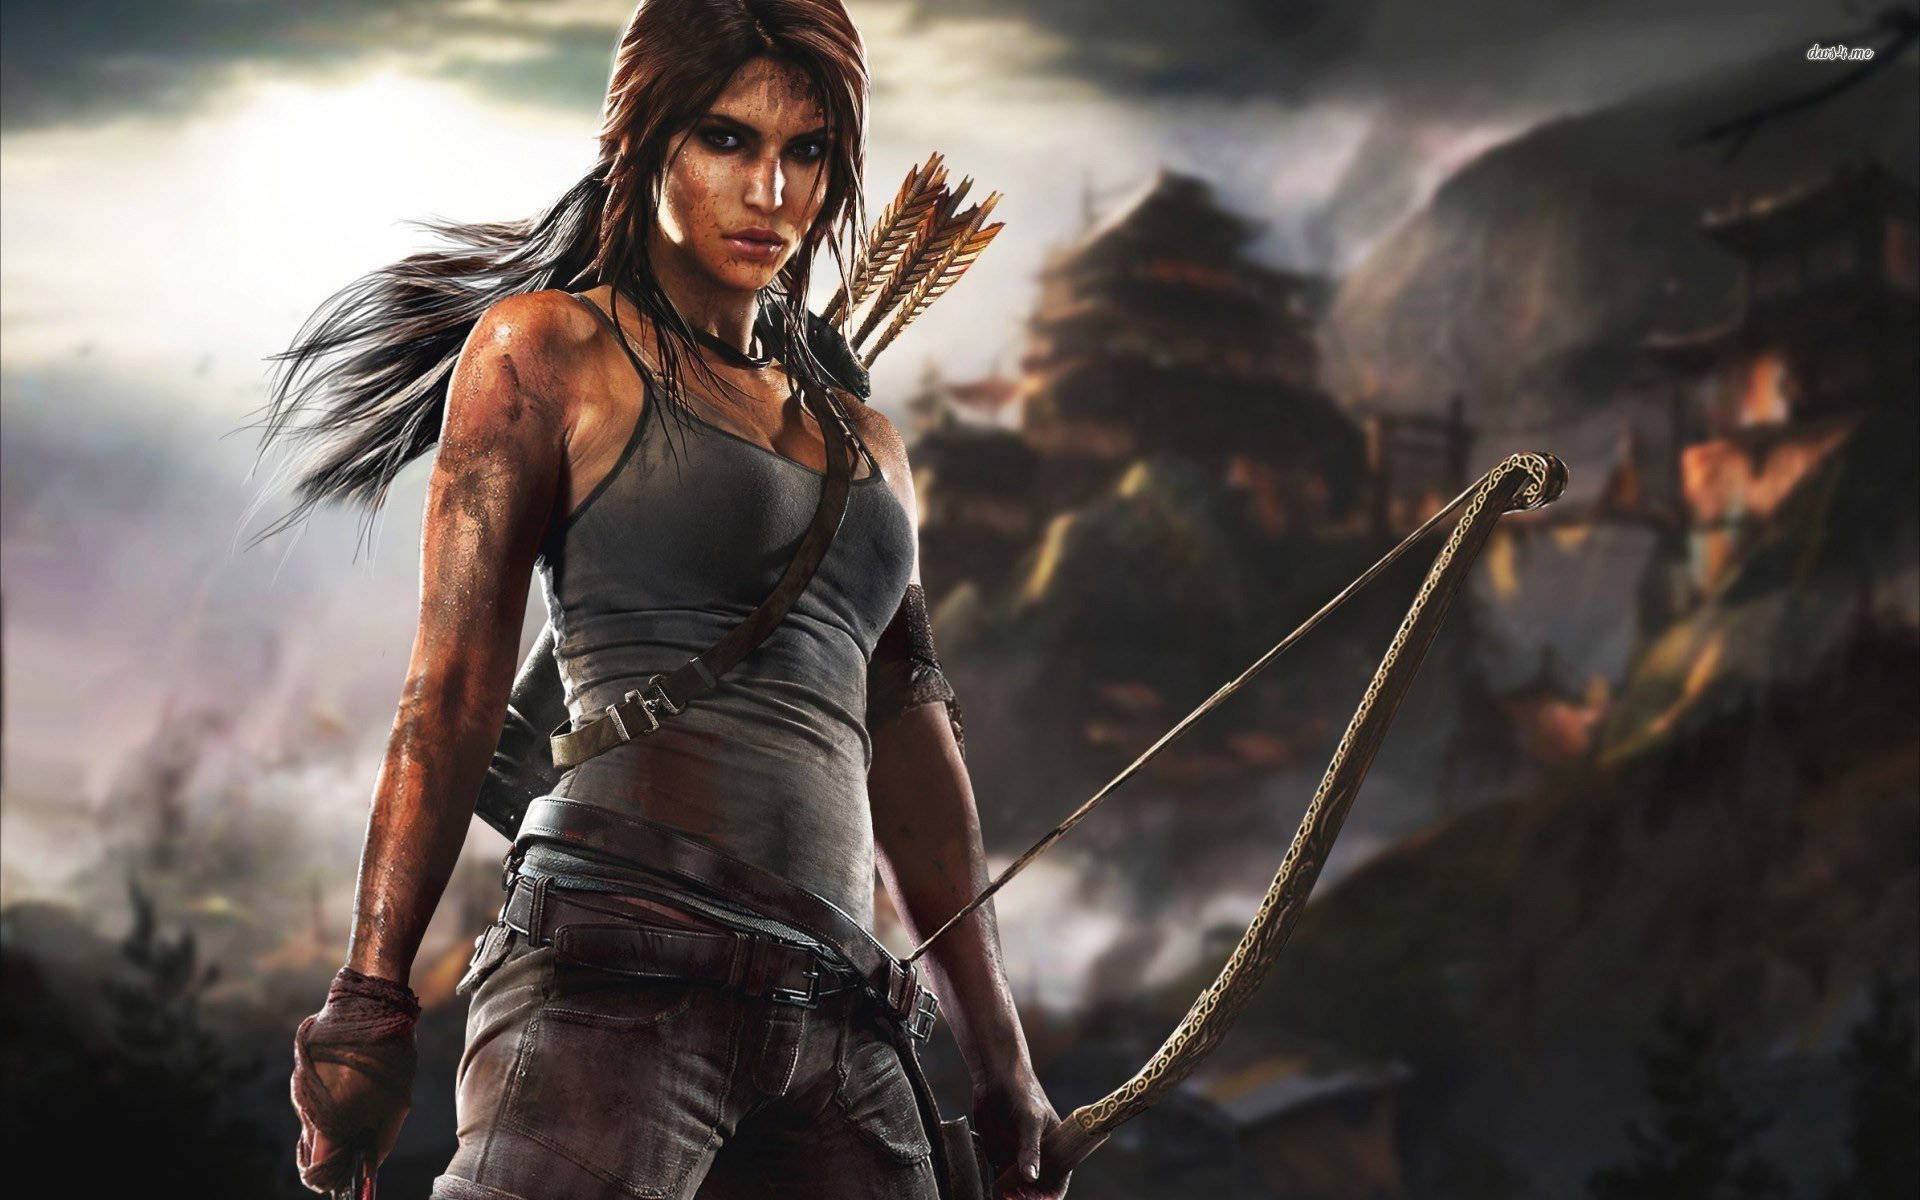 Lara Croft, modige eventyrer klar til at udforske nye lande. Wallpaper